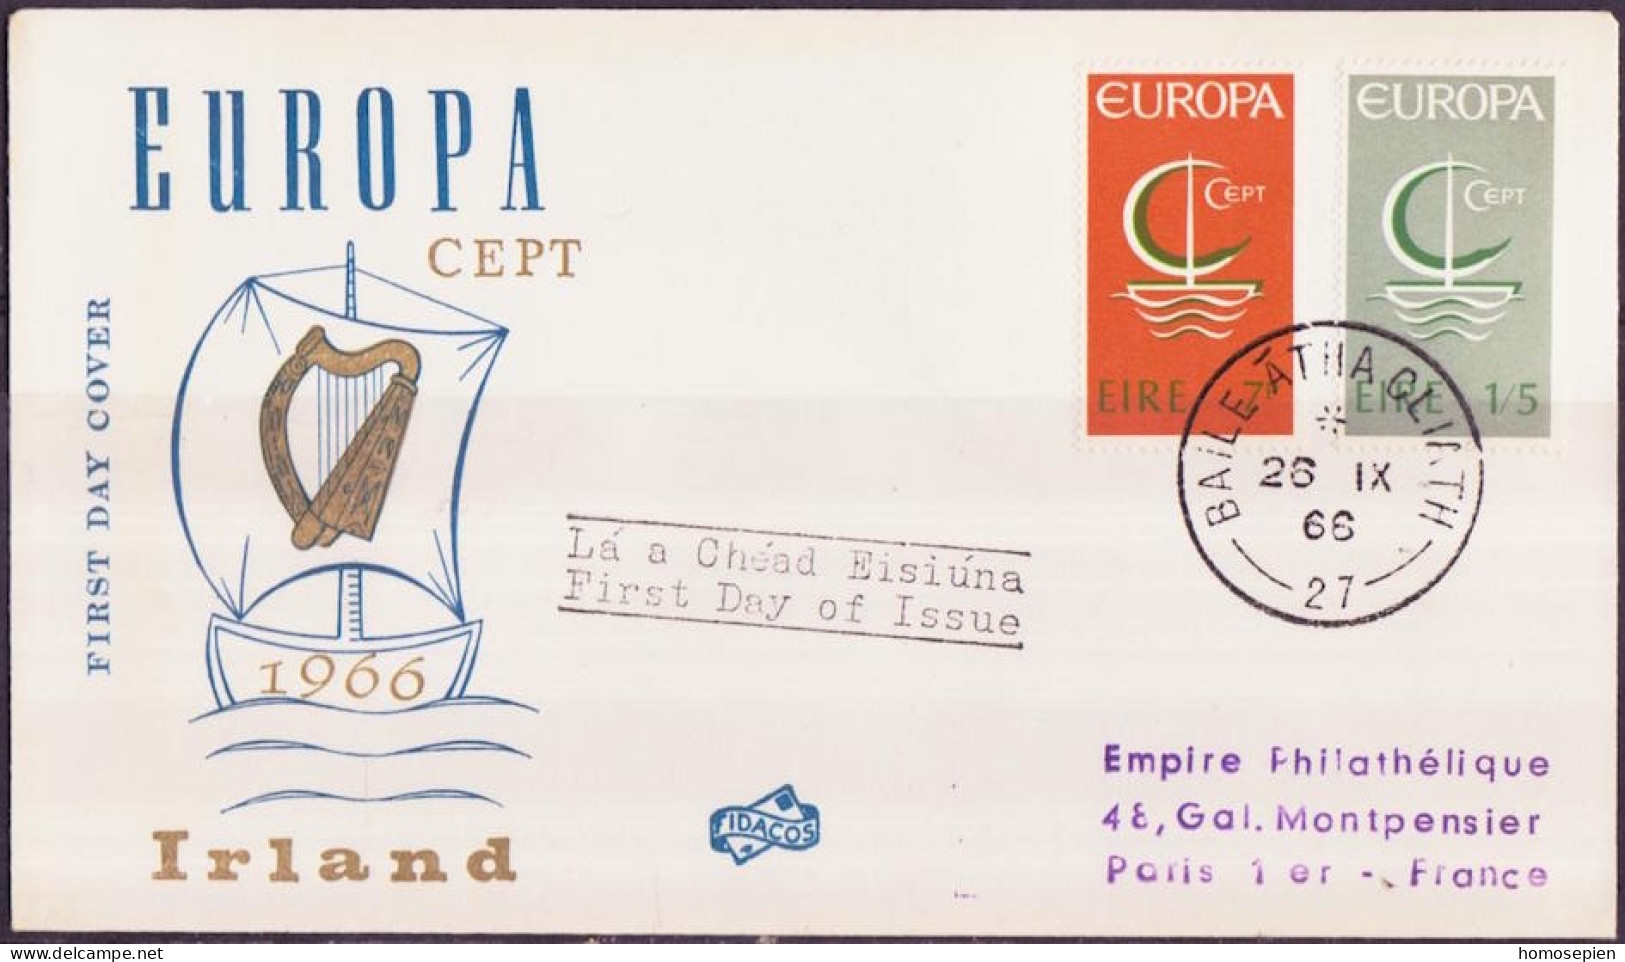 Europa CEPT 1966 Irlande - Ireland - Irland FDC1 Y&T N°187 à 188 - Michel N°188 à 189 - 1966